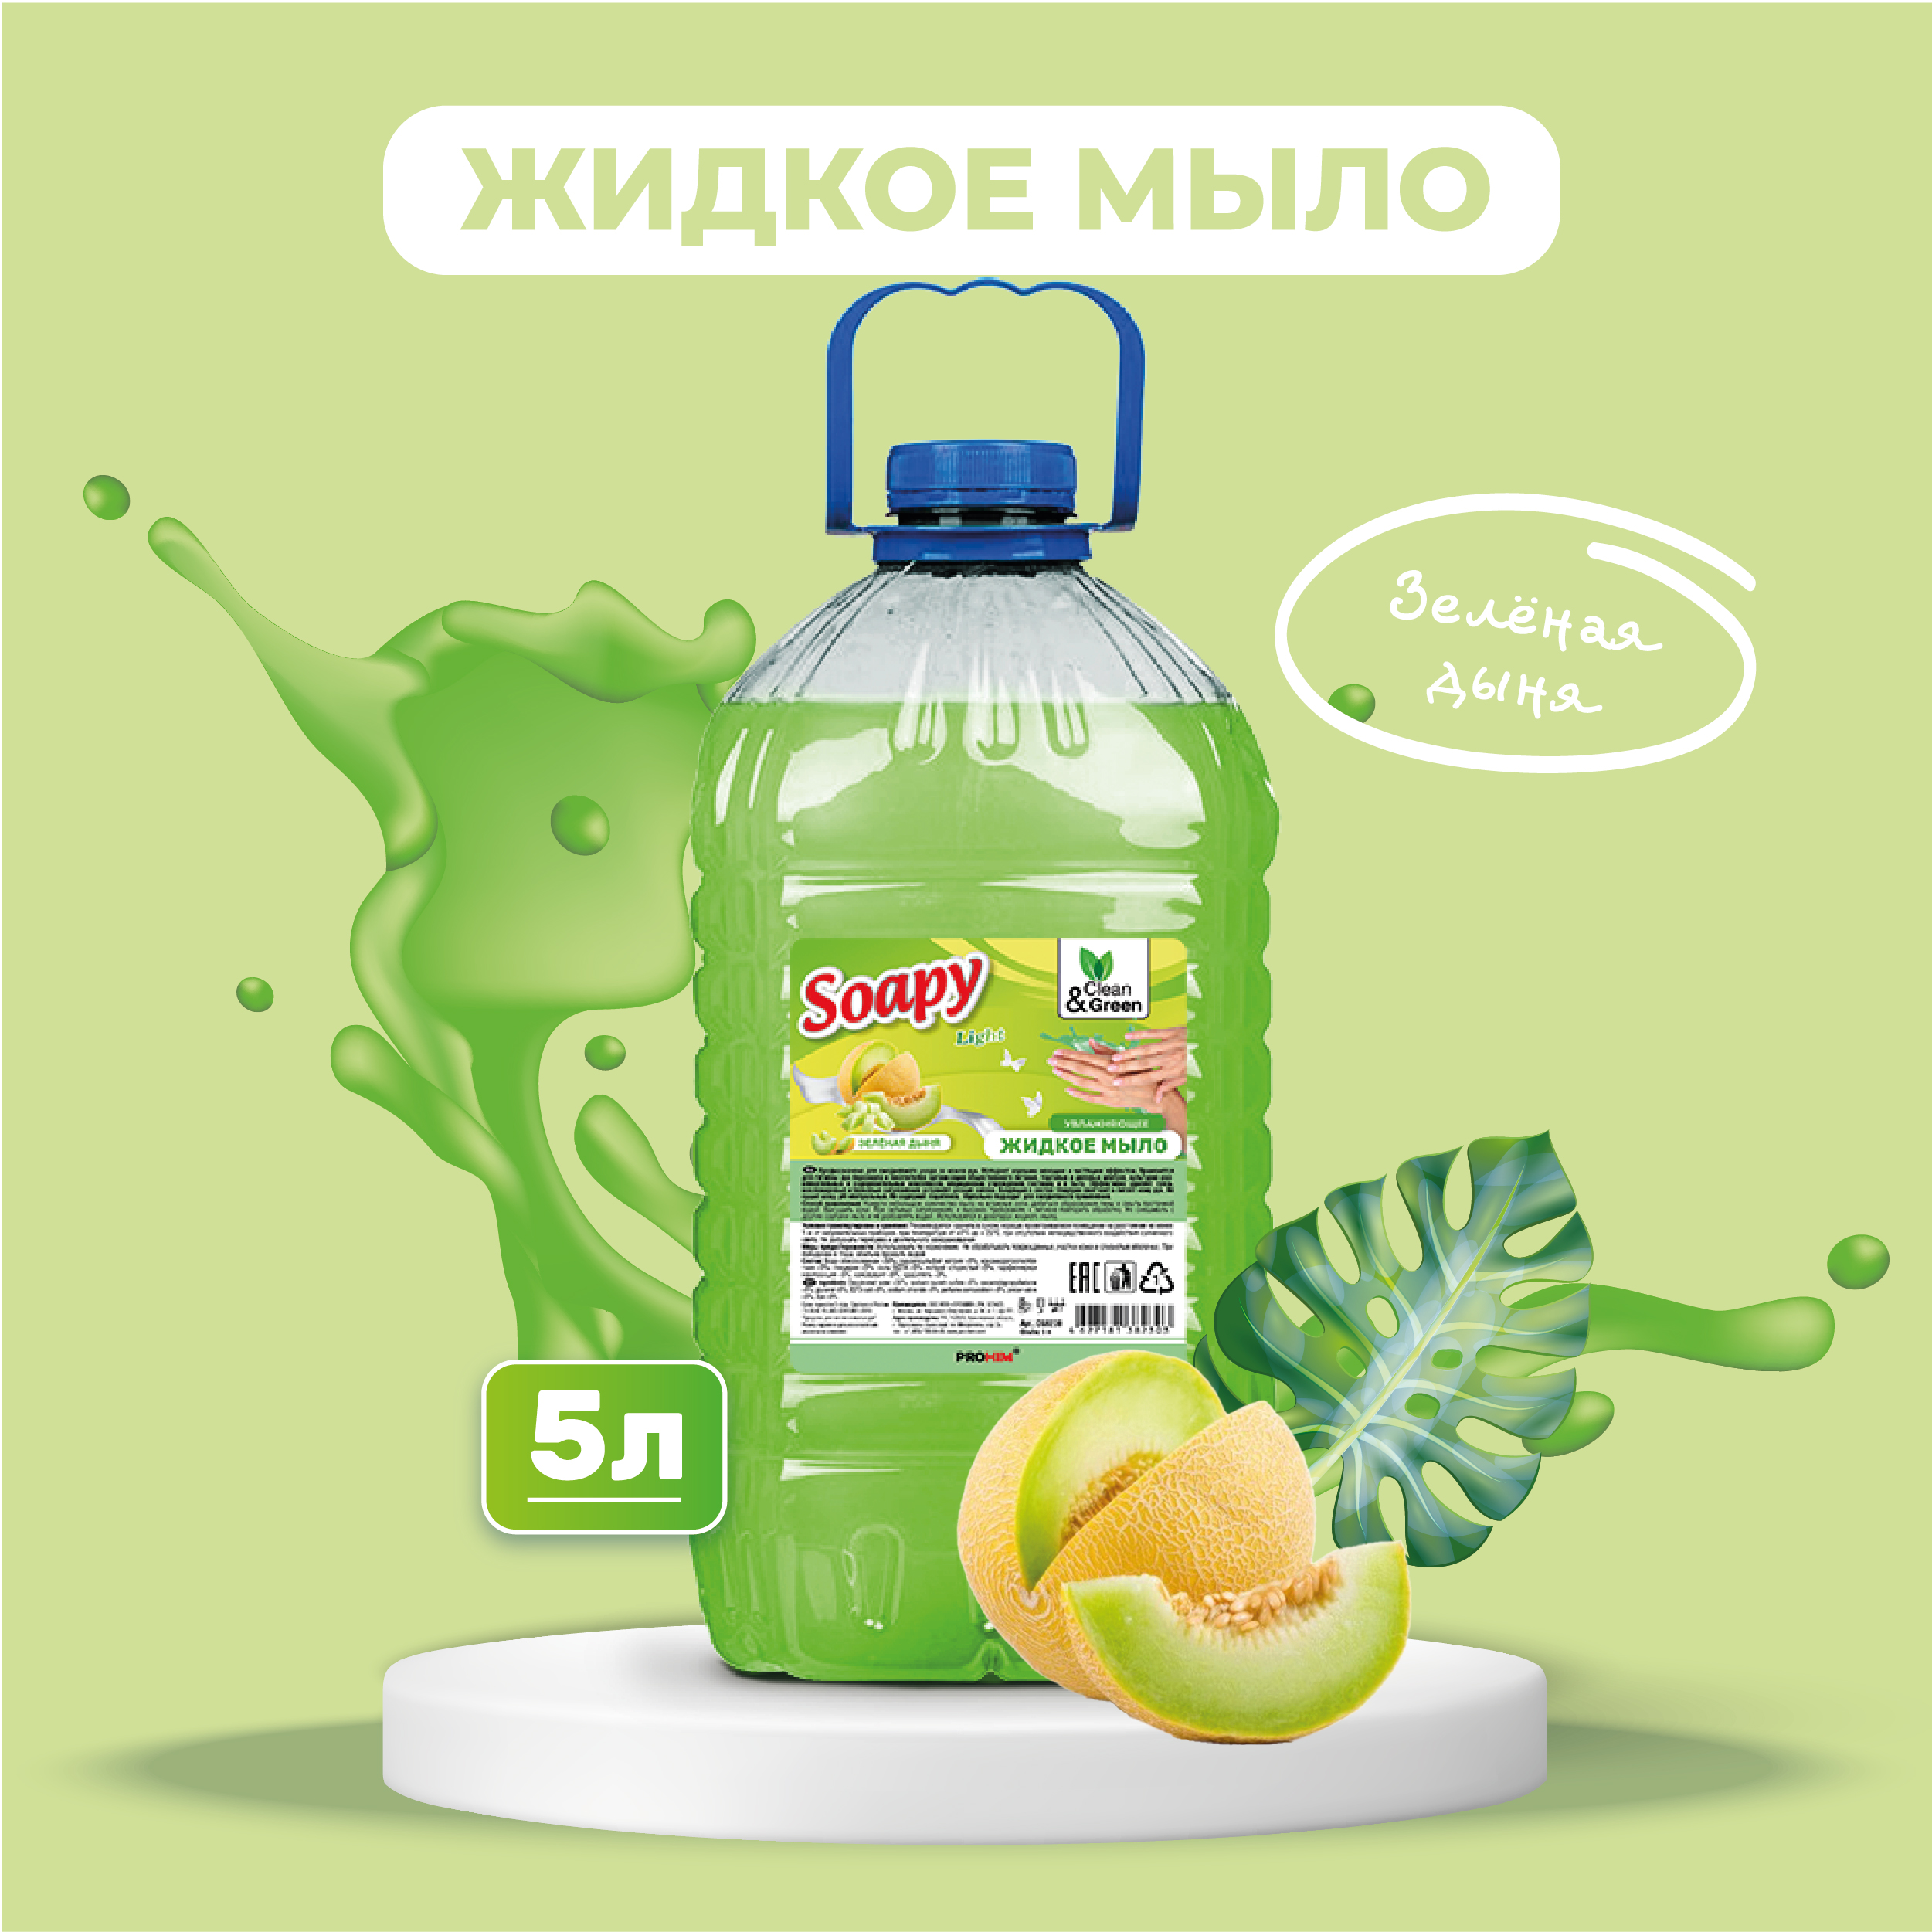 Жидкое мыло Clean&Green Soapy эконом Зеленая дыня 5 л мыло жидкое synergetic имбирь и бергамот антибактериальное с эффектом увлажнения 3 5 л